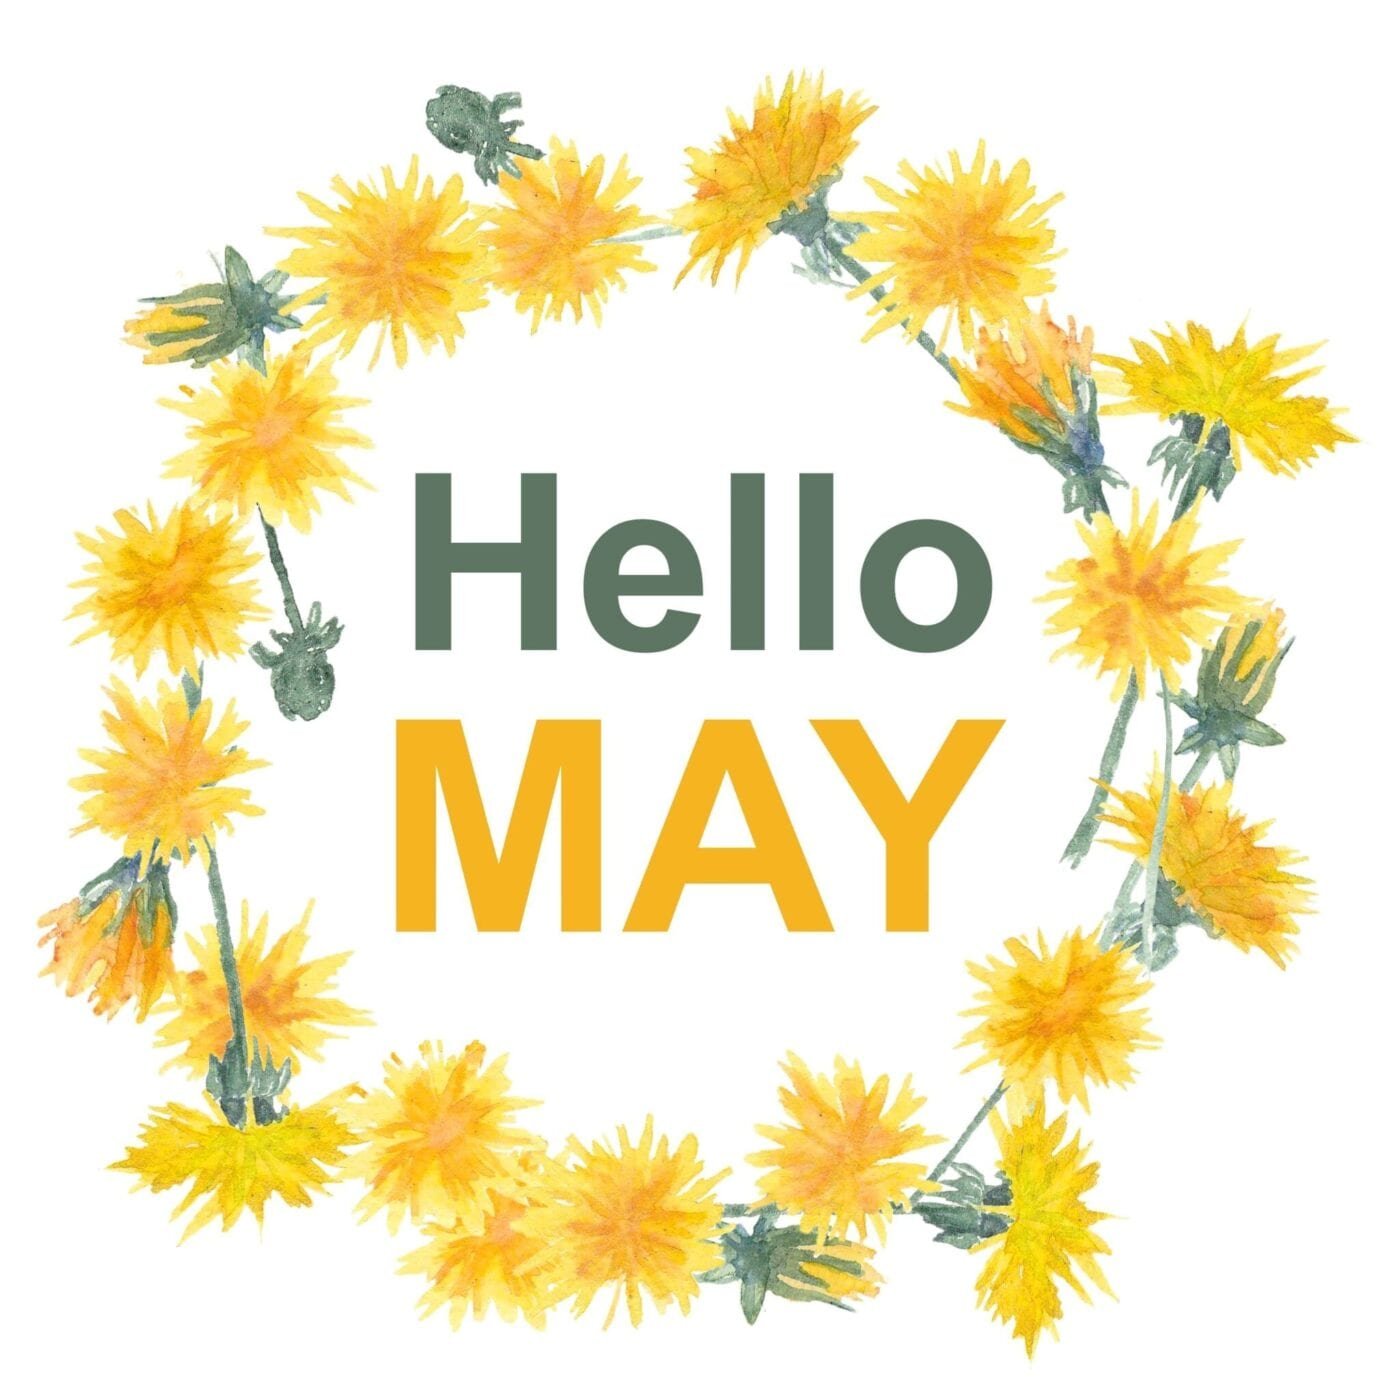 May 